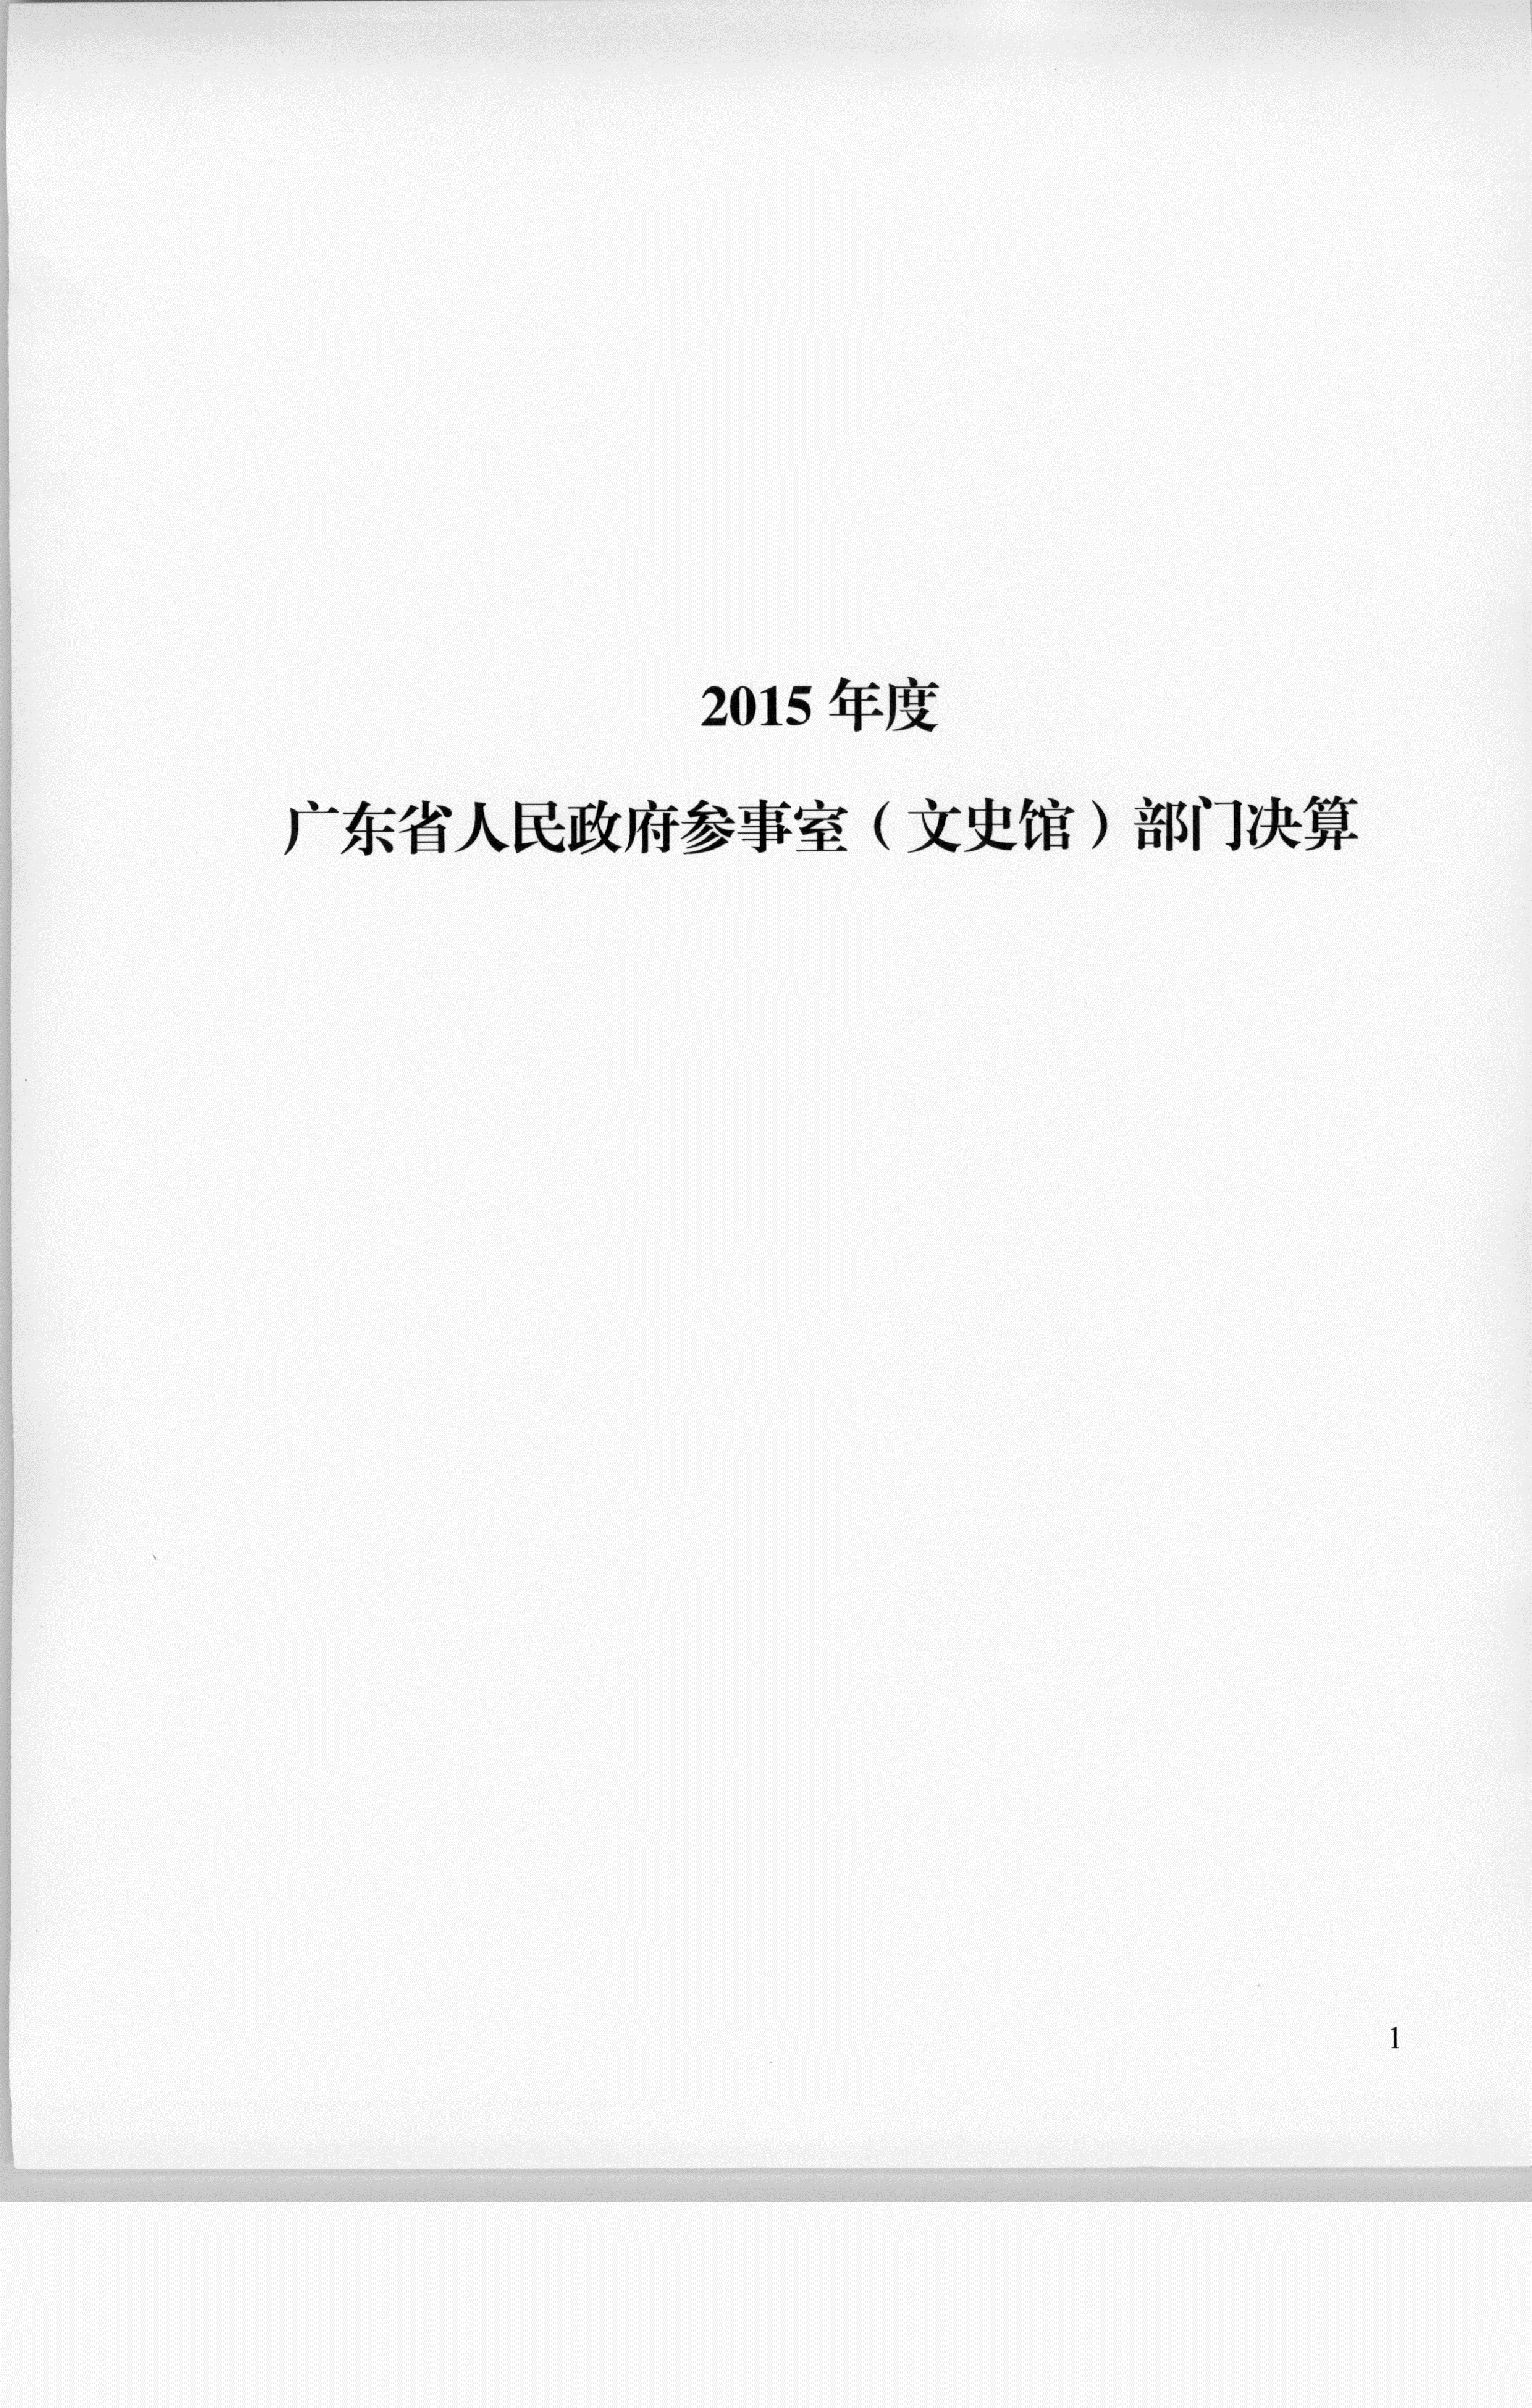 2015年度决算 001_1.PNG